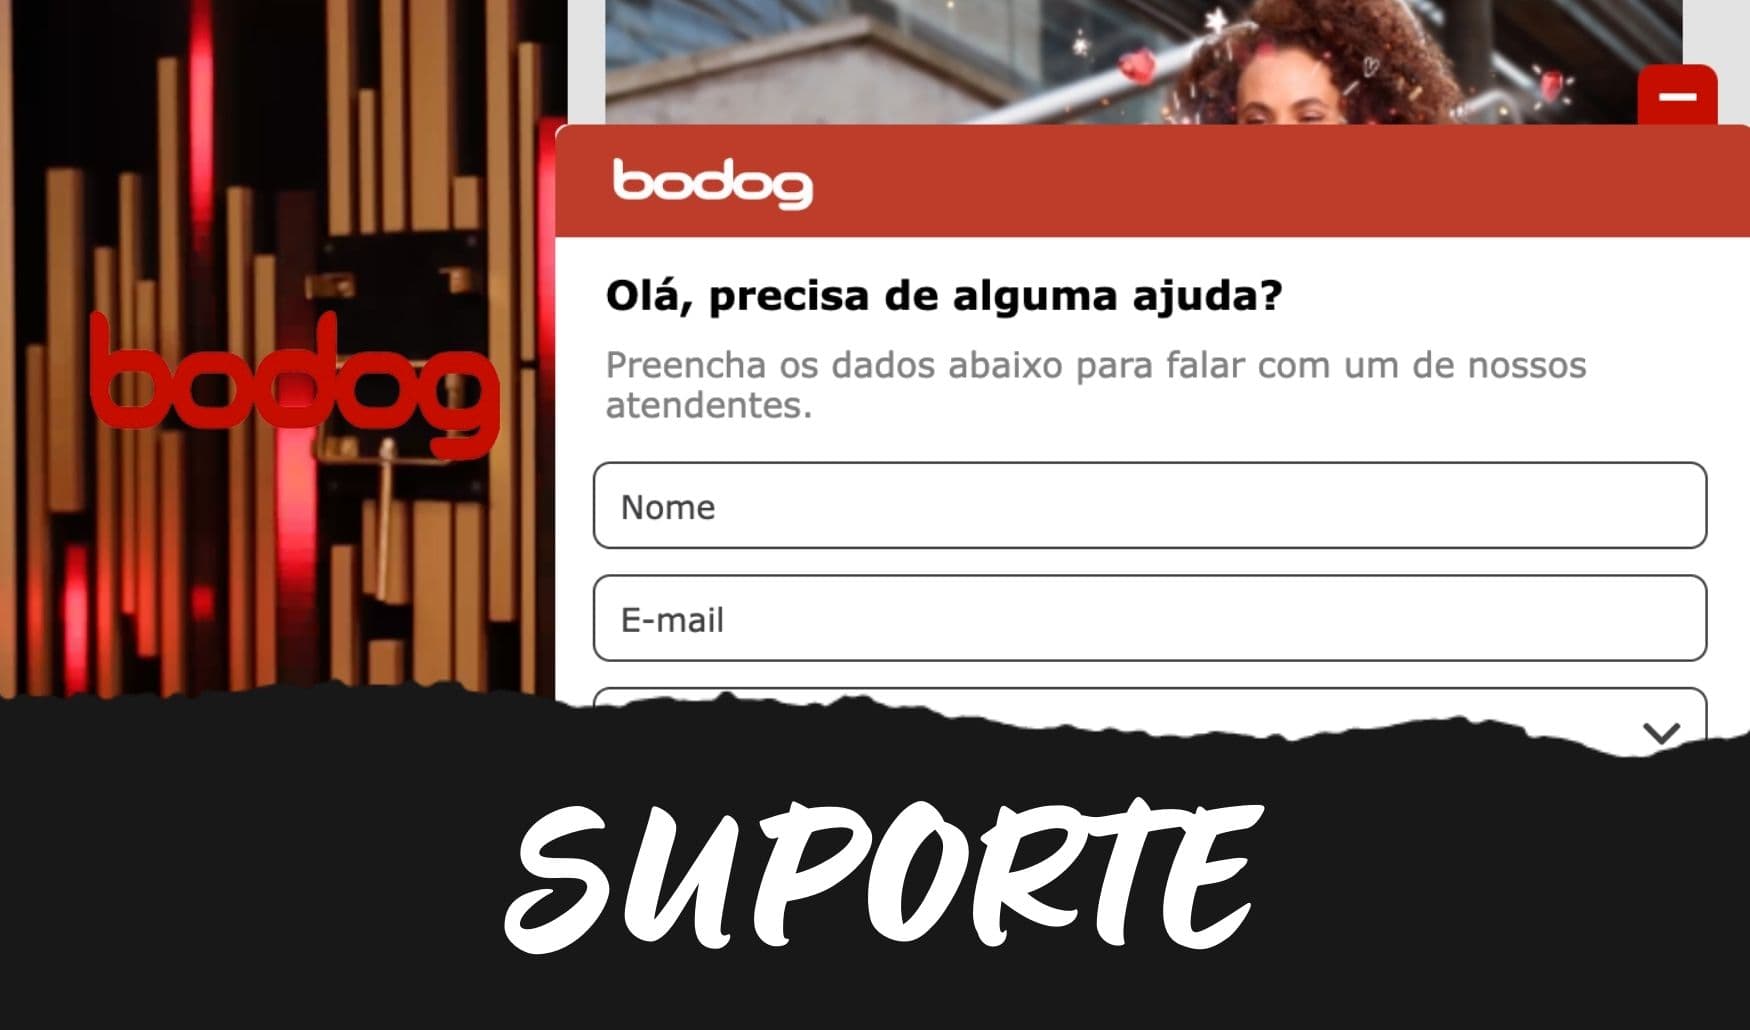 Bodog Brasil instruções para contato com o suporte técnico